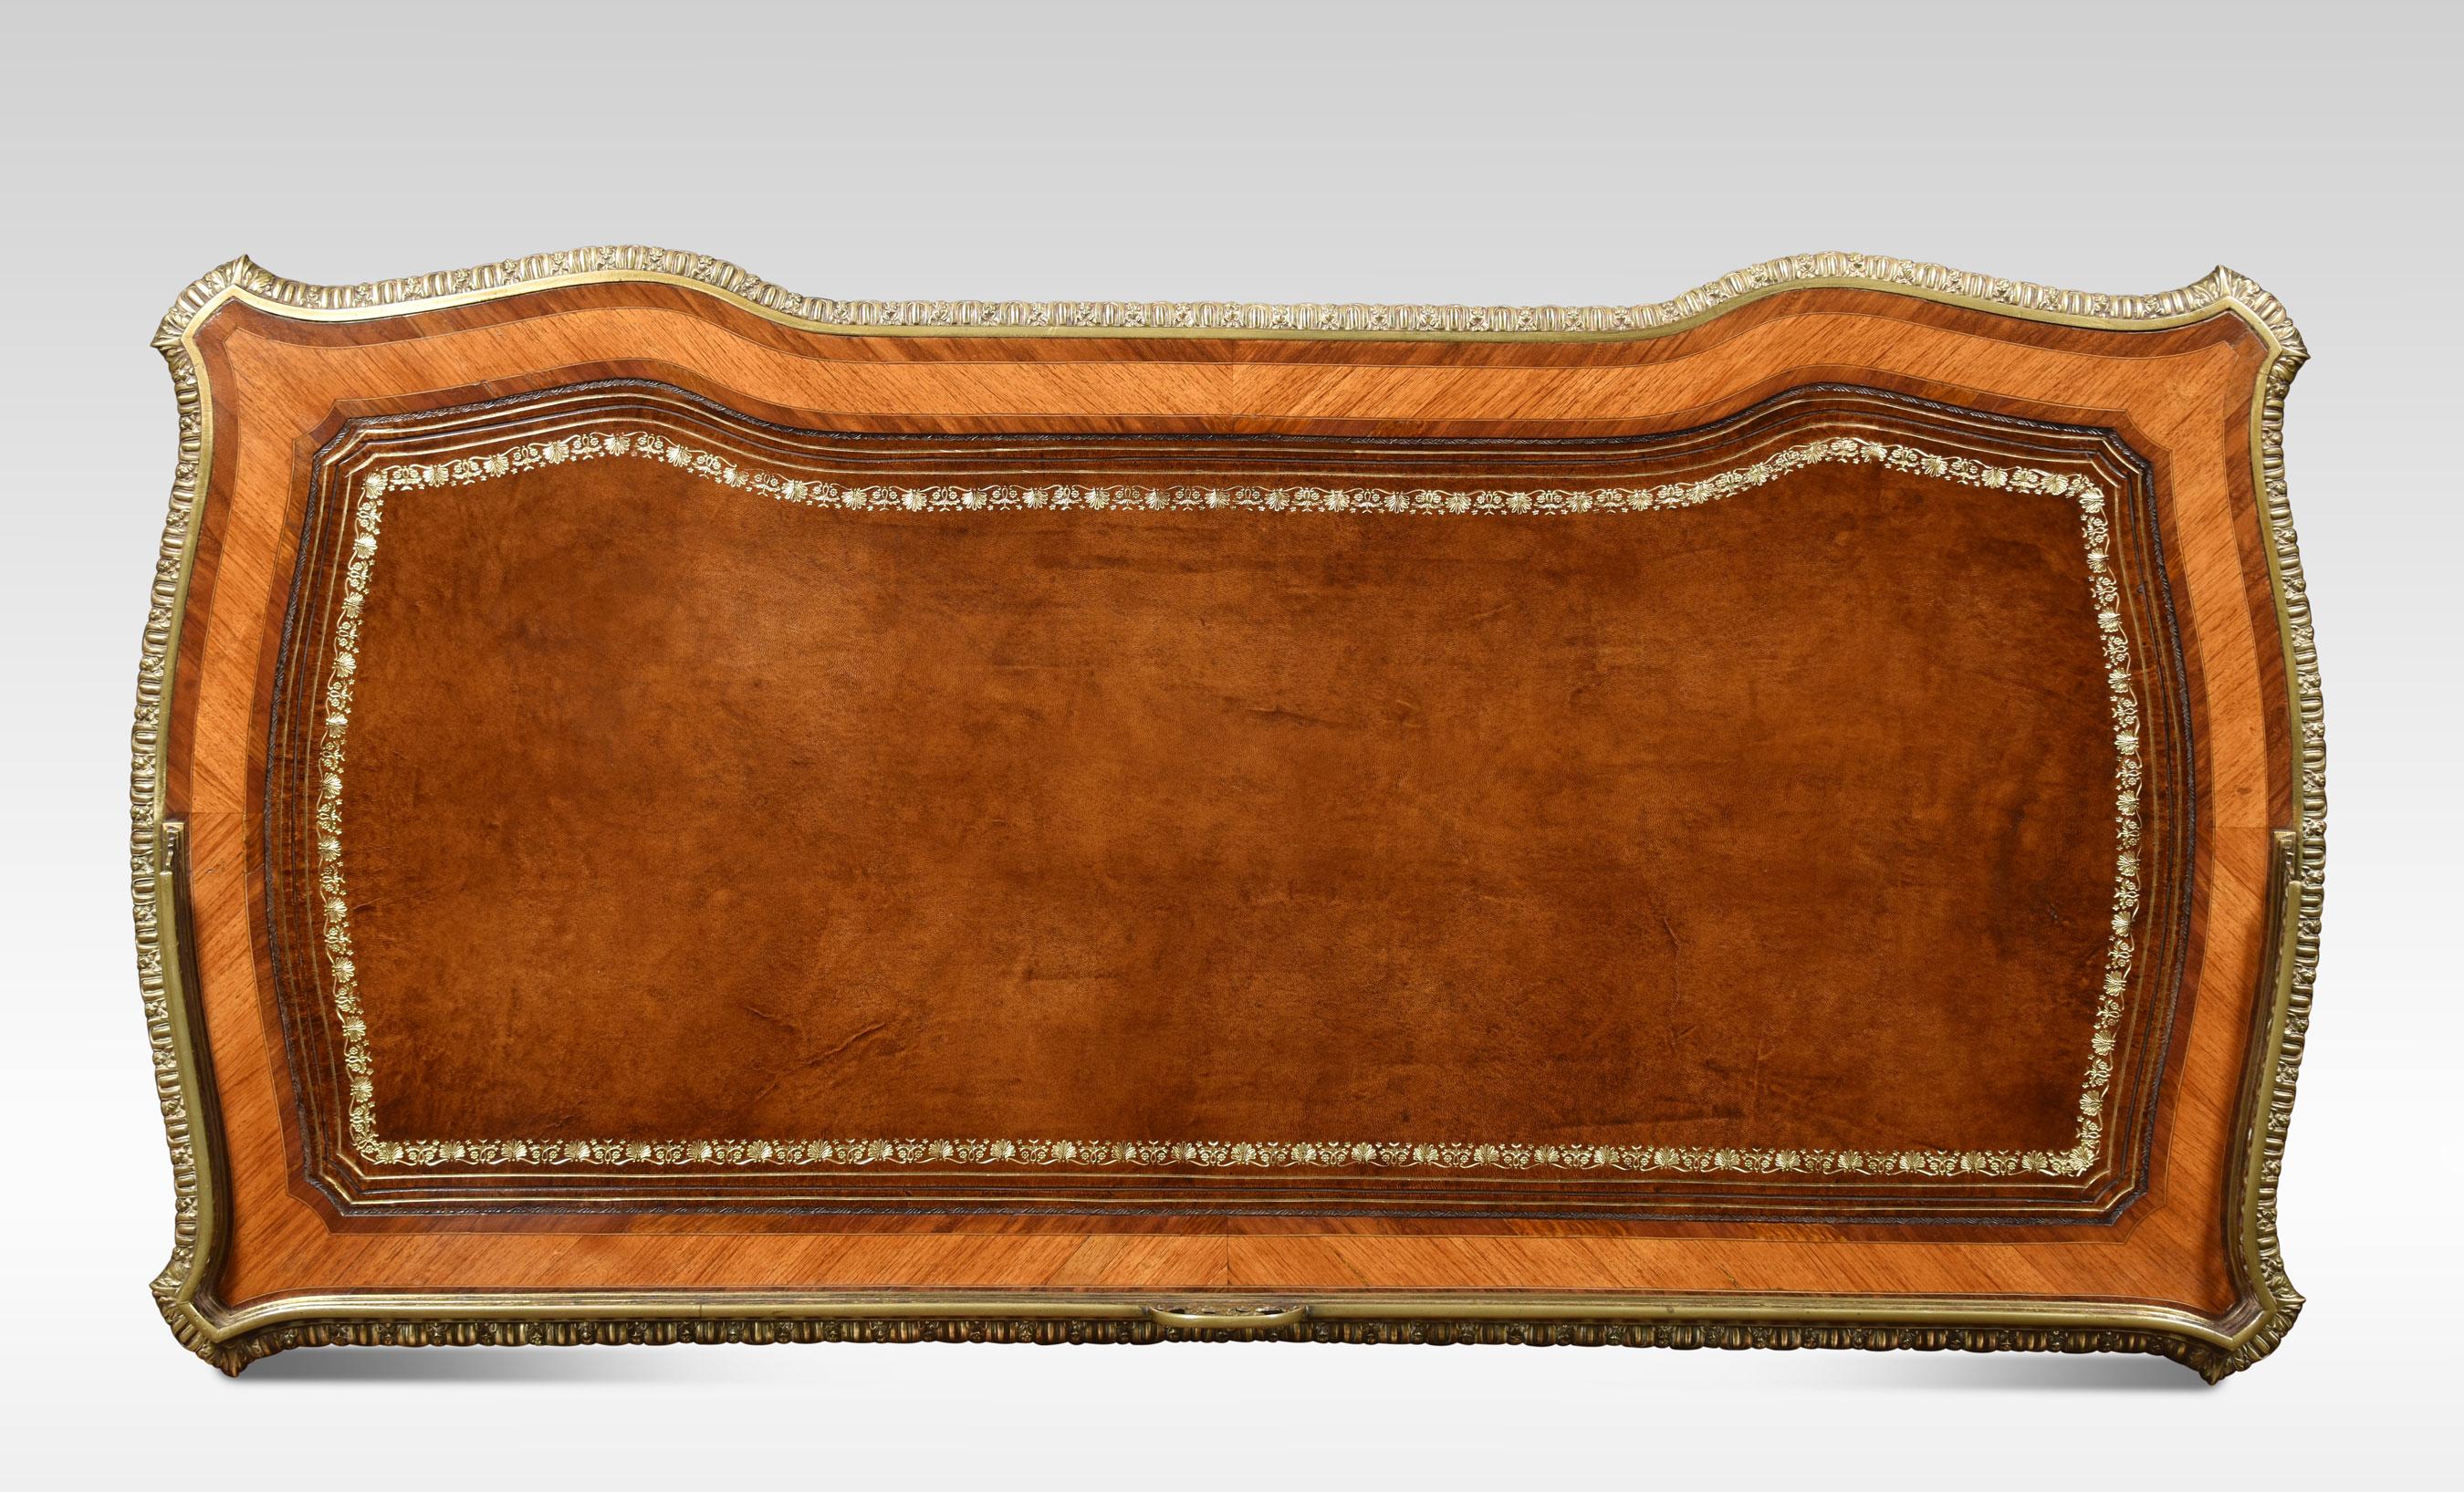 table à écrire du XIXe siècle, la galerie surélevée percée de trois quarts avec le monogramme SFJ, le plateau en cuir inséré entouré d'une bordure en laiton ciselé. Au-dessus d'un arrangement de cinq tiroirs, le tout reposant sur de minces supports